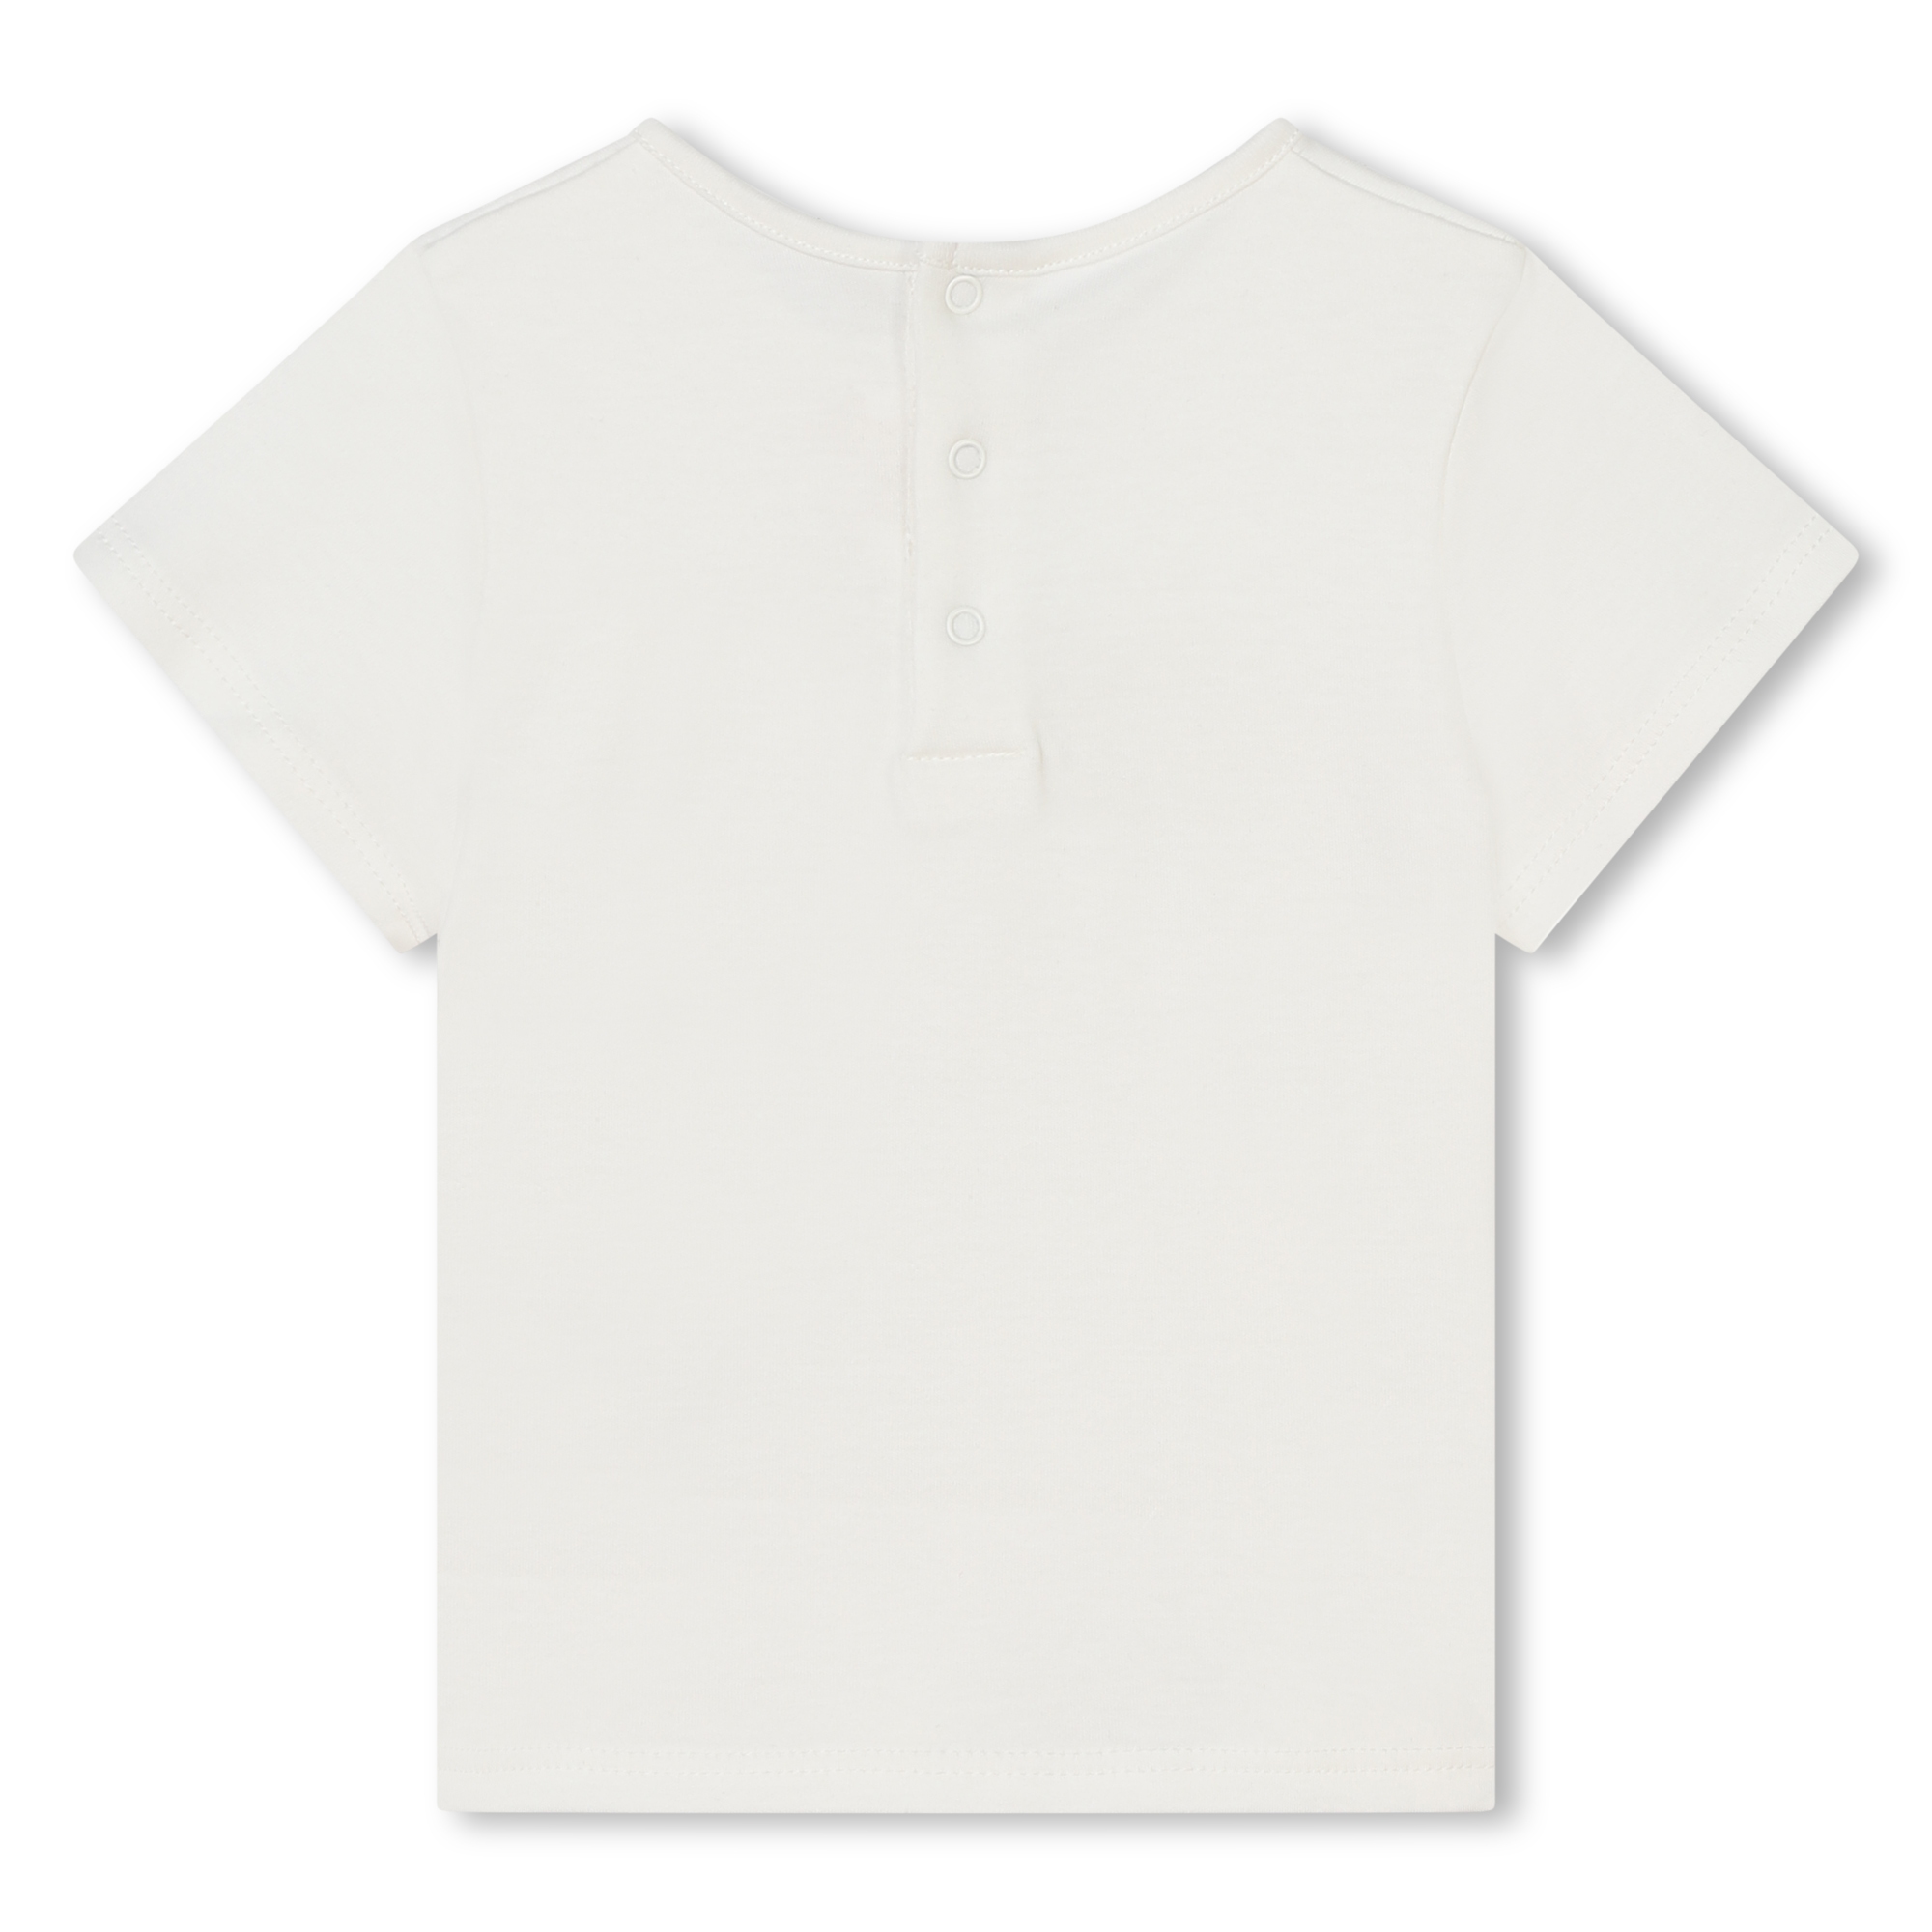 Kurzarm-T-Shirt mit Stickerei CHLOE Für MÄDCHEN